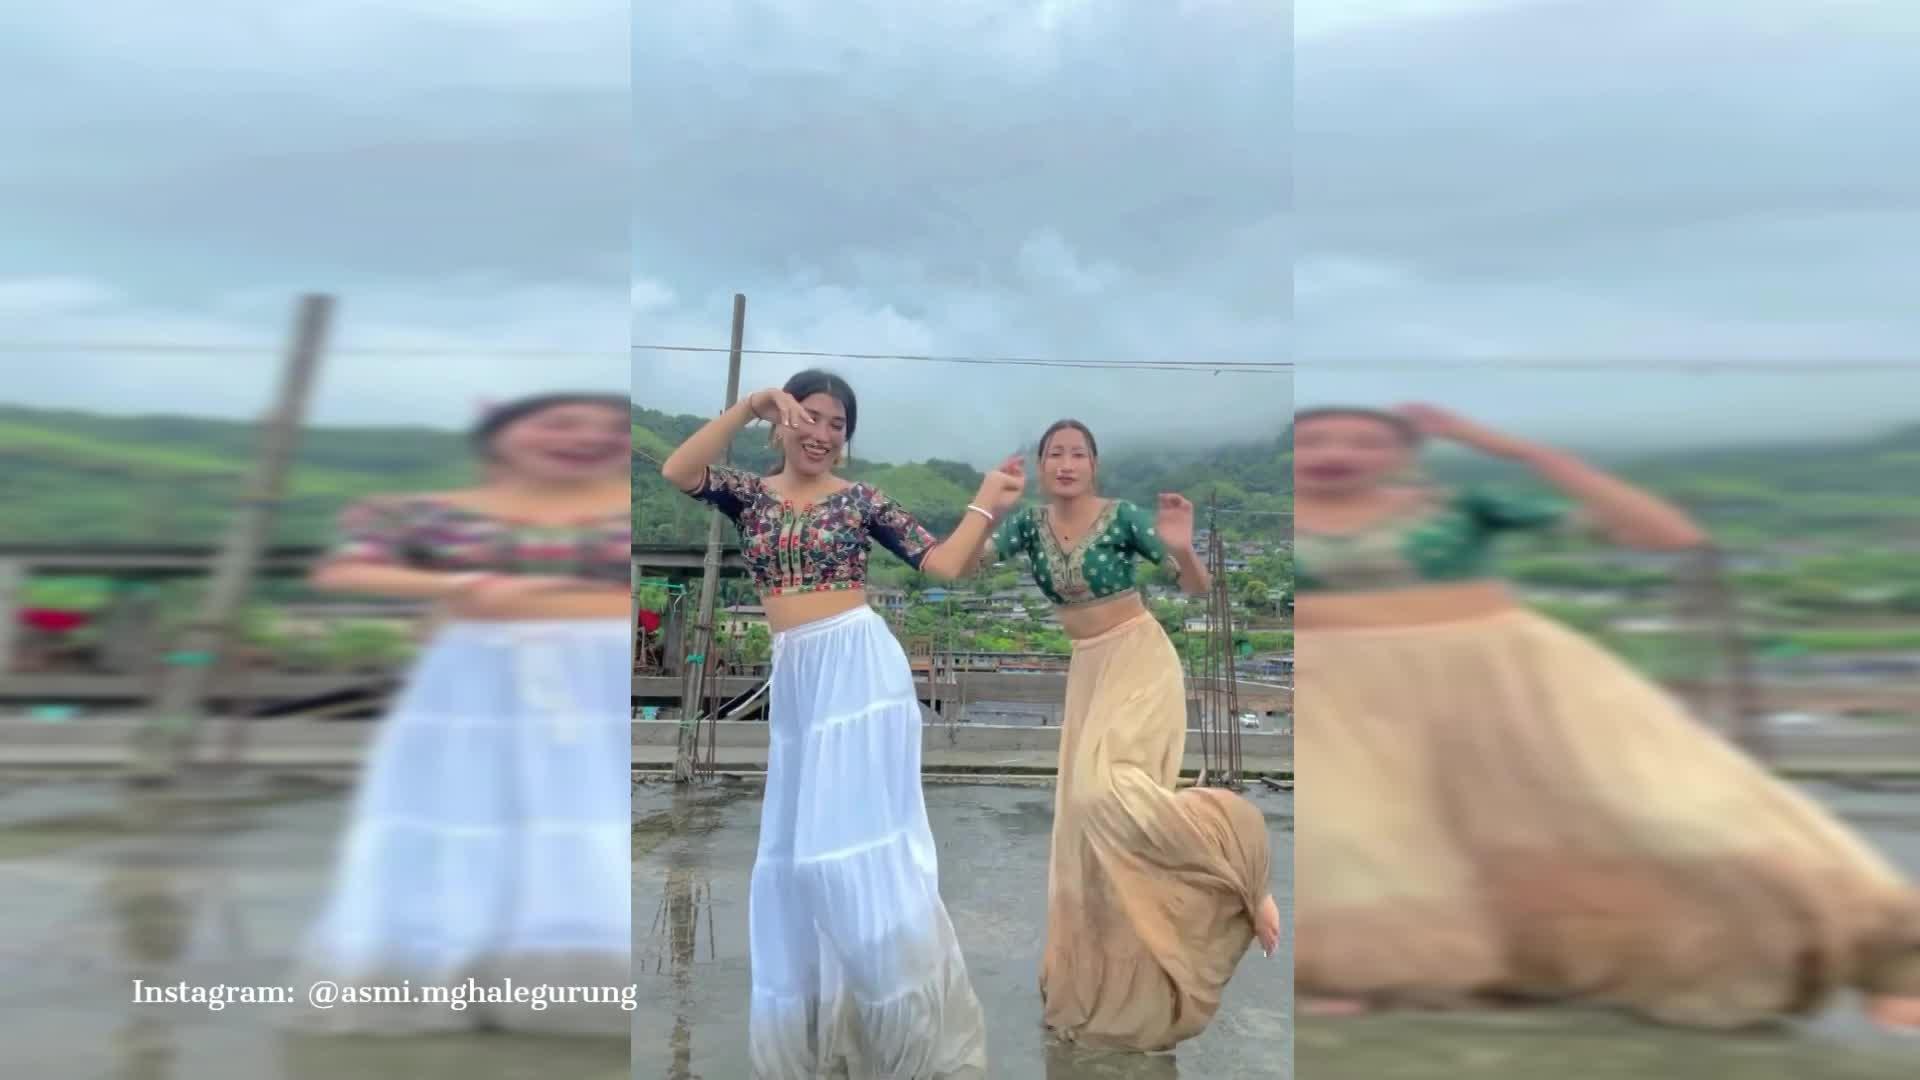 बारिश की धुन में 'नेपाली' गाने पर नाची खूबसूरत लड़कियां, स्टेप्स और एक्सप्रेशन पर यूजर्स हो गए दीवाने